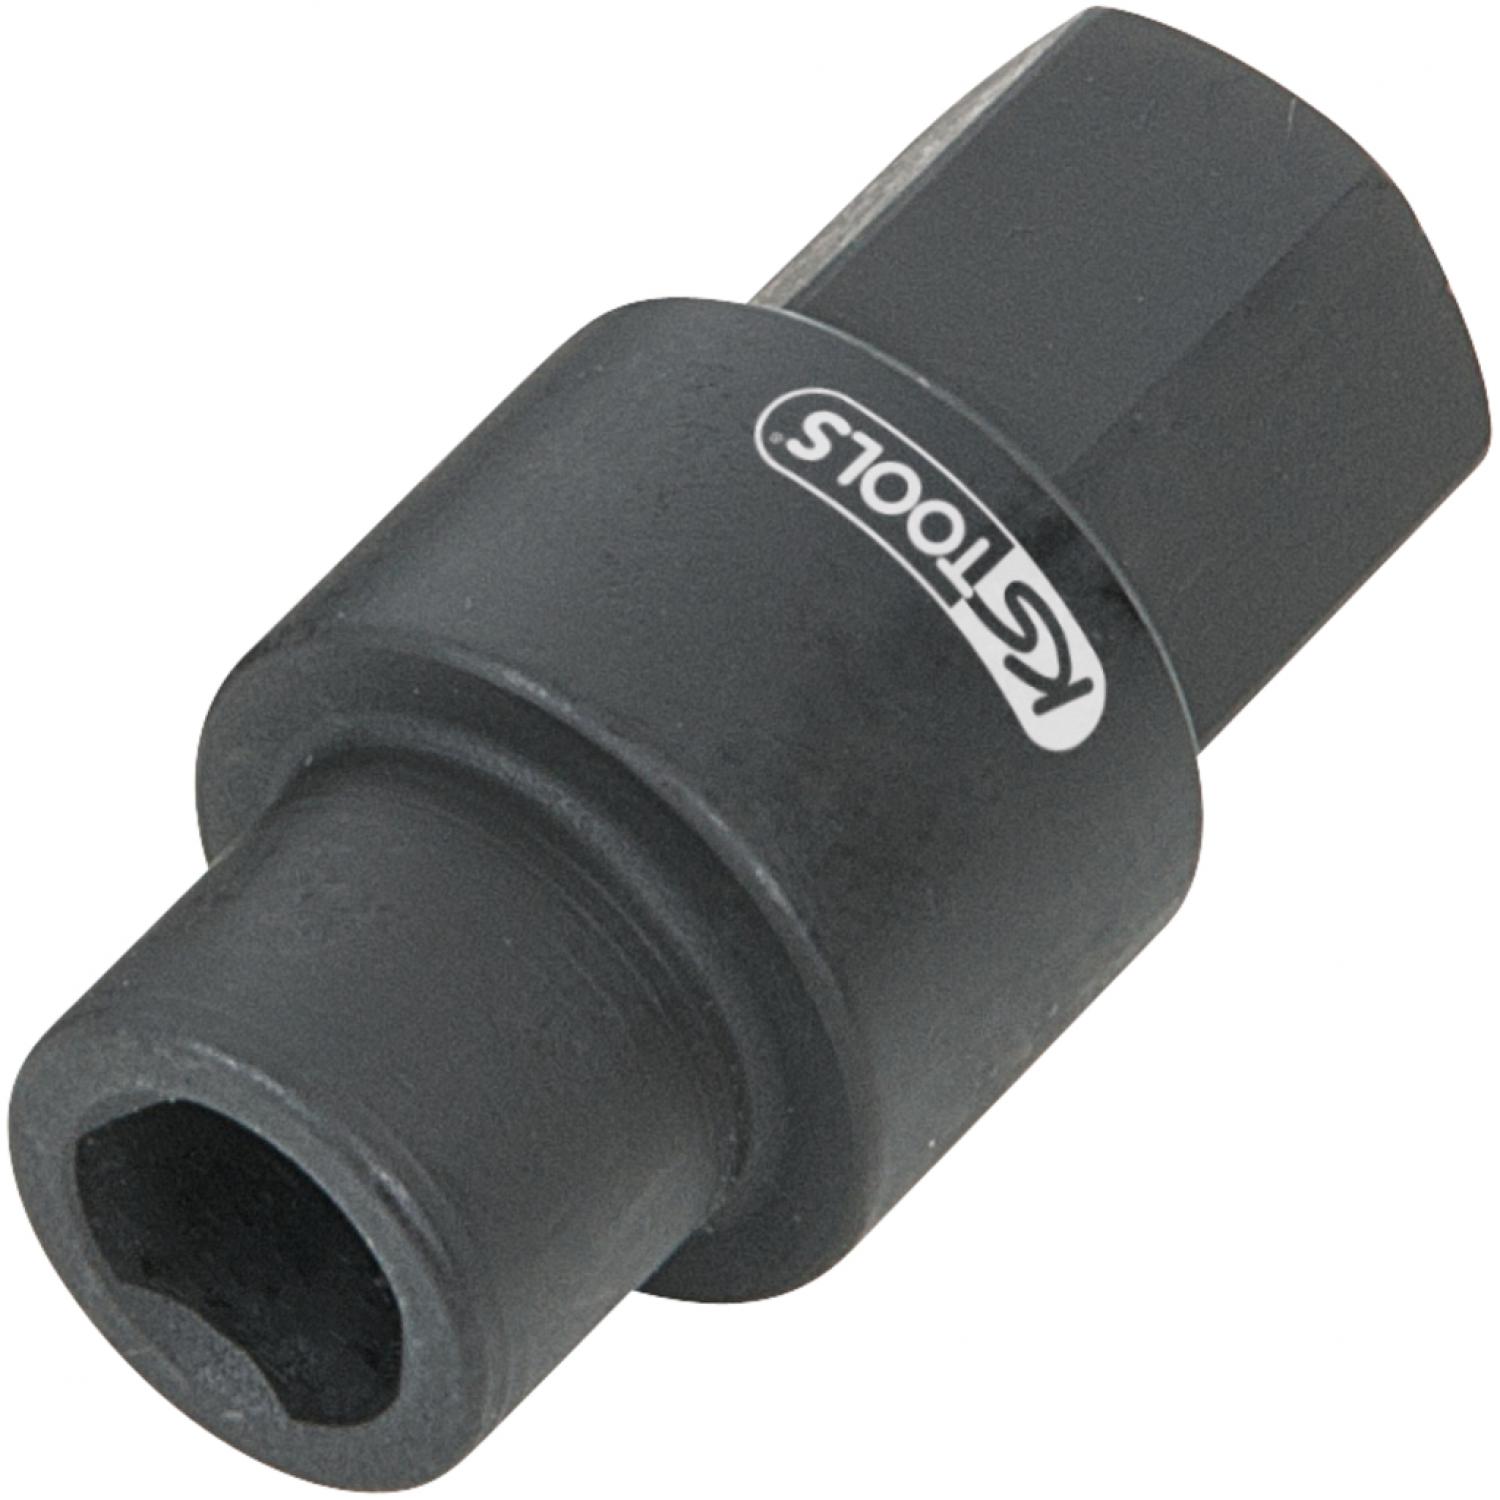 Торцовая головка для впрыскивающего топливного насоса Bosch, Ø 18 мм, L = 36 мм